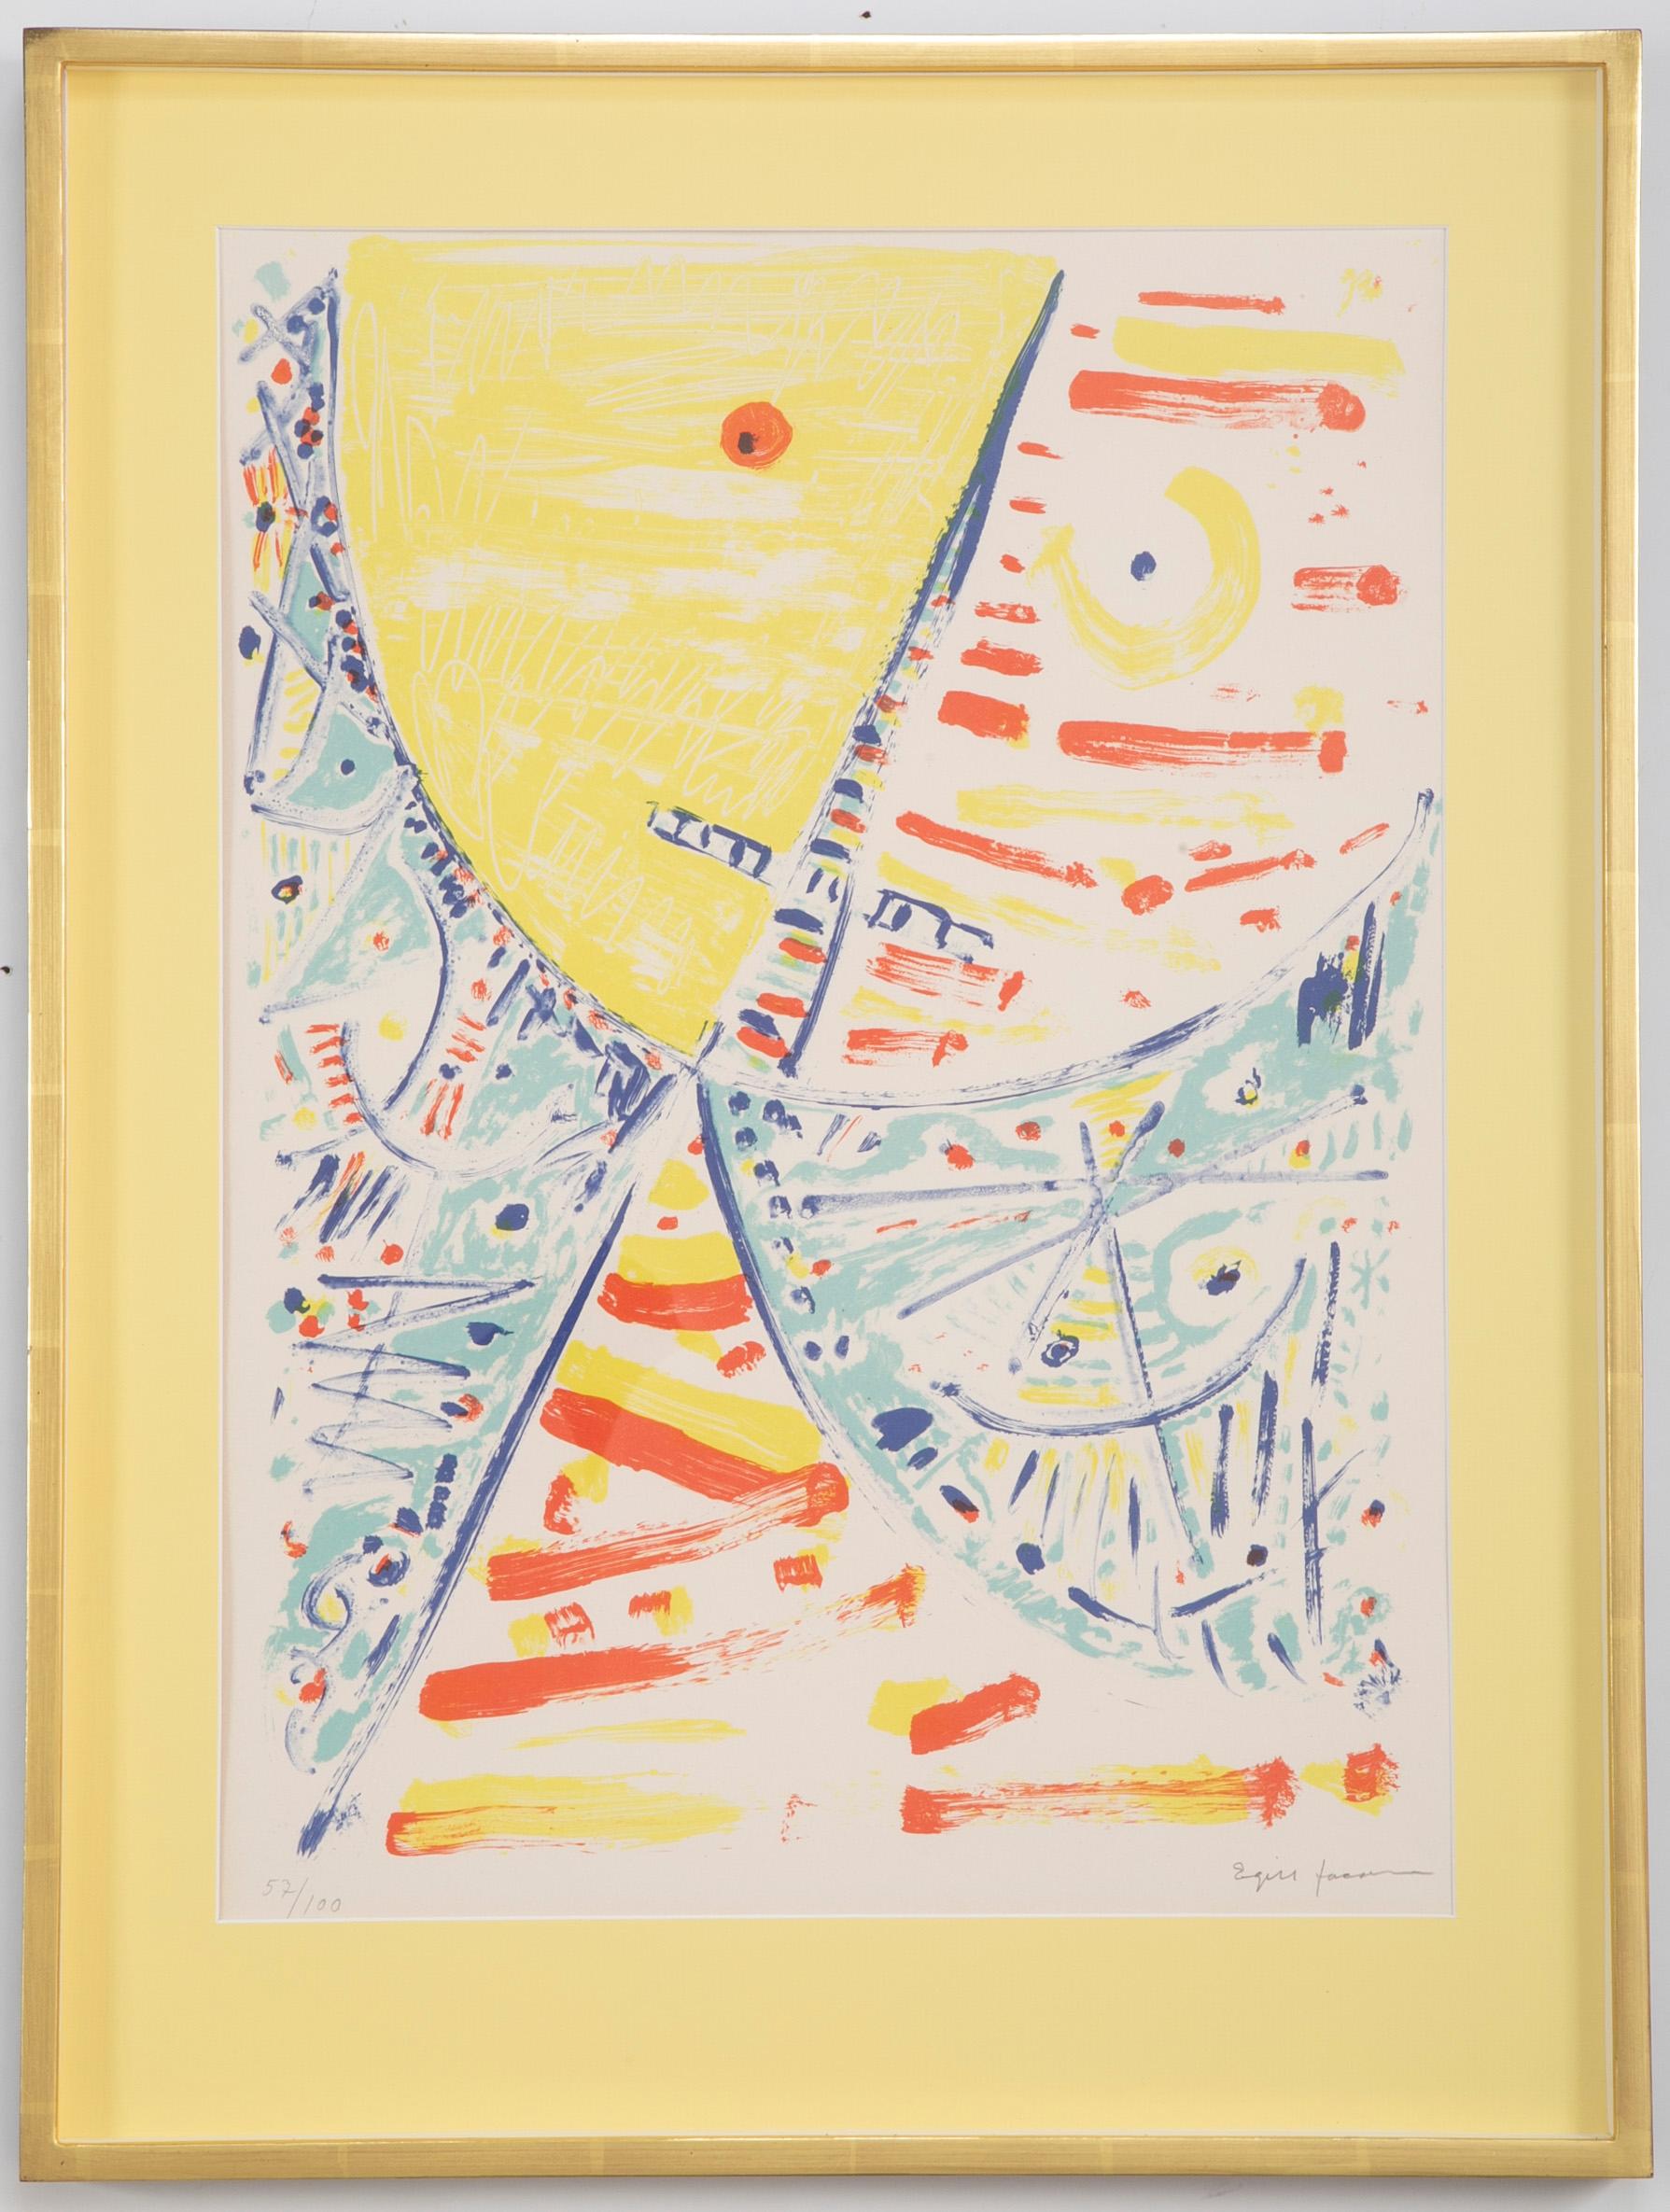 Lithographie en couleurs Composition 57/100 par Egill Jacobsen (danois. 1918 - 1998). Signé en bas à droite. Encadré avec des matériaux sans acide, du plexiglas de protection contre les UV dans des cadres en feuille d'or jaune 22 carats. 

Vue ;